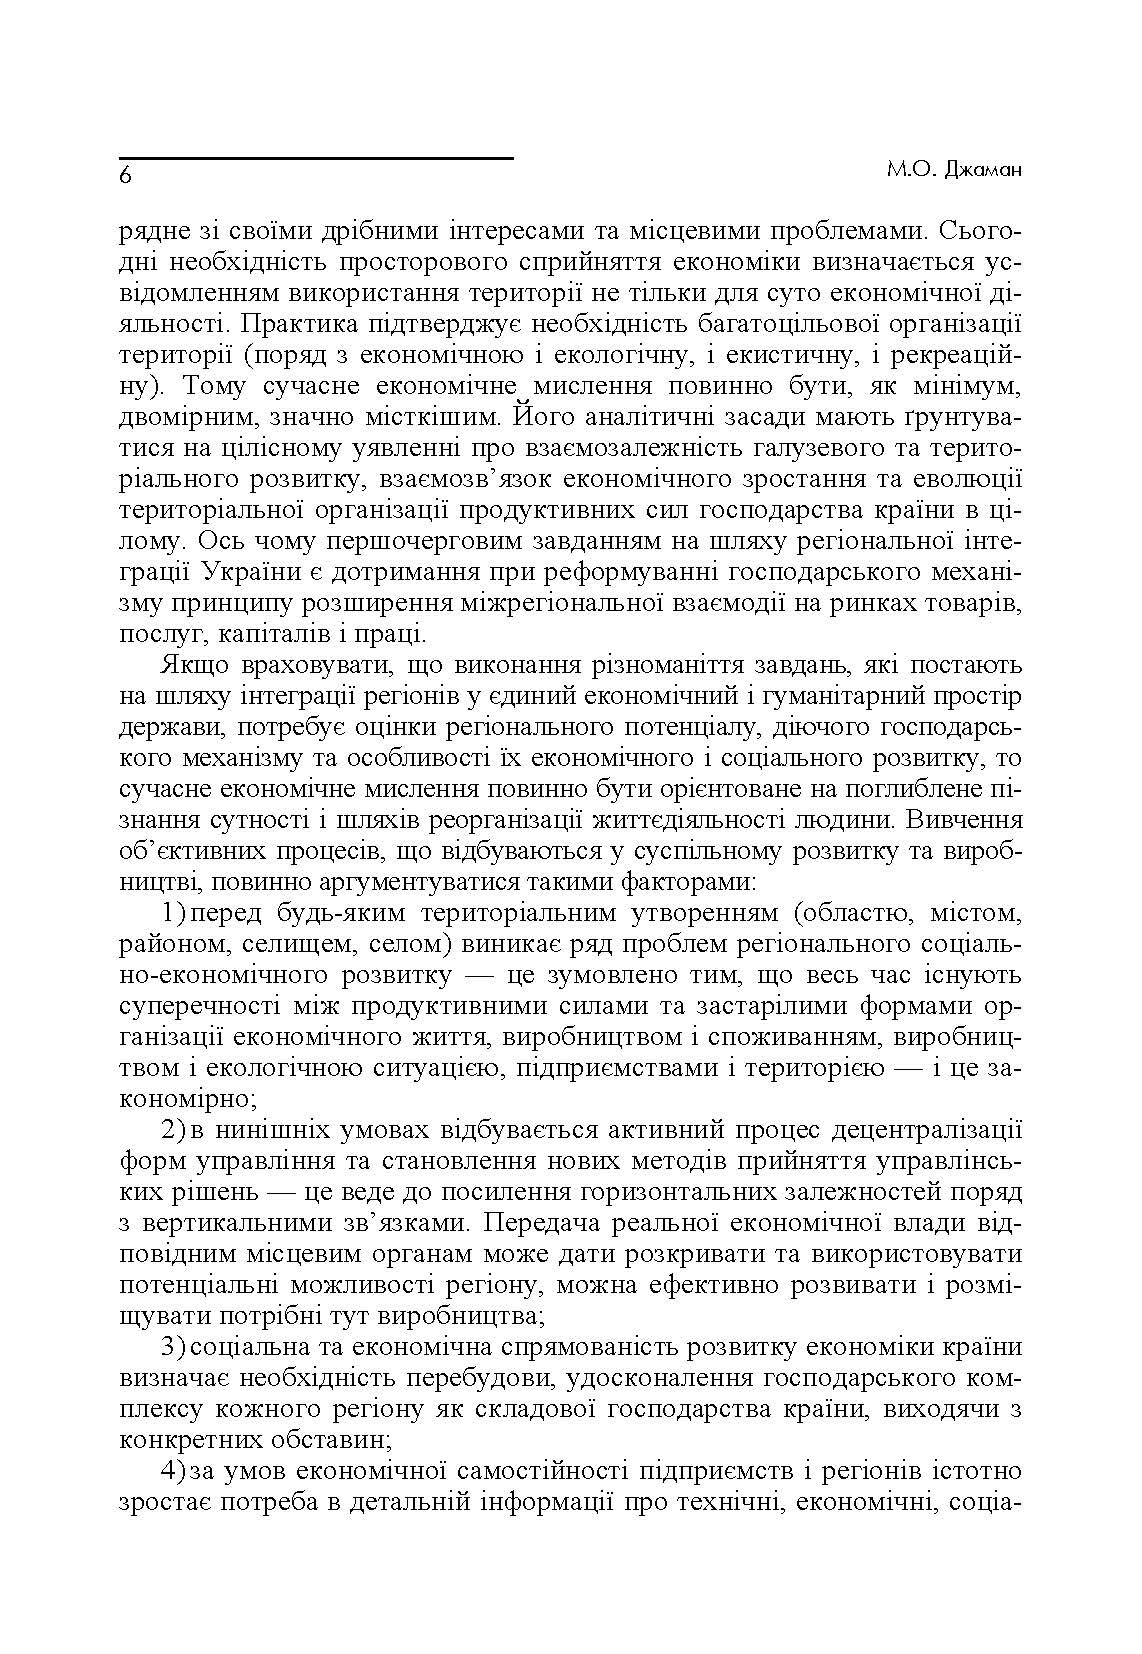 Теорія економіки регіонів. Навчальний посібник рекомендовано МОН України (2019 год)). Автор — Джаман М.О.. 